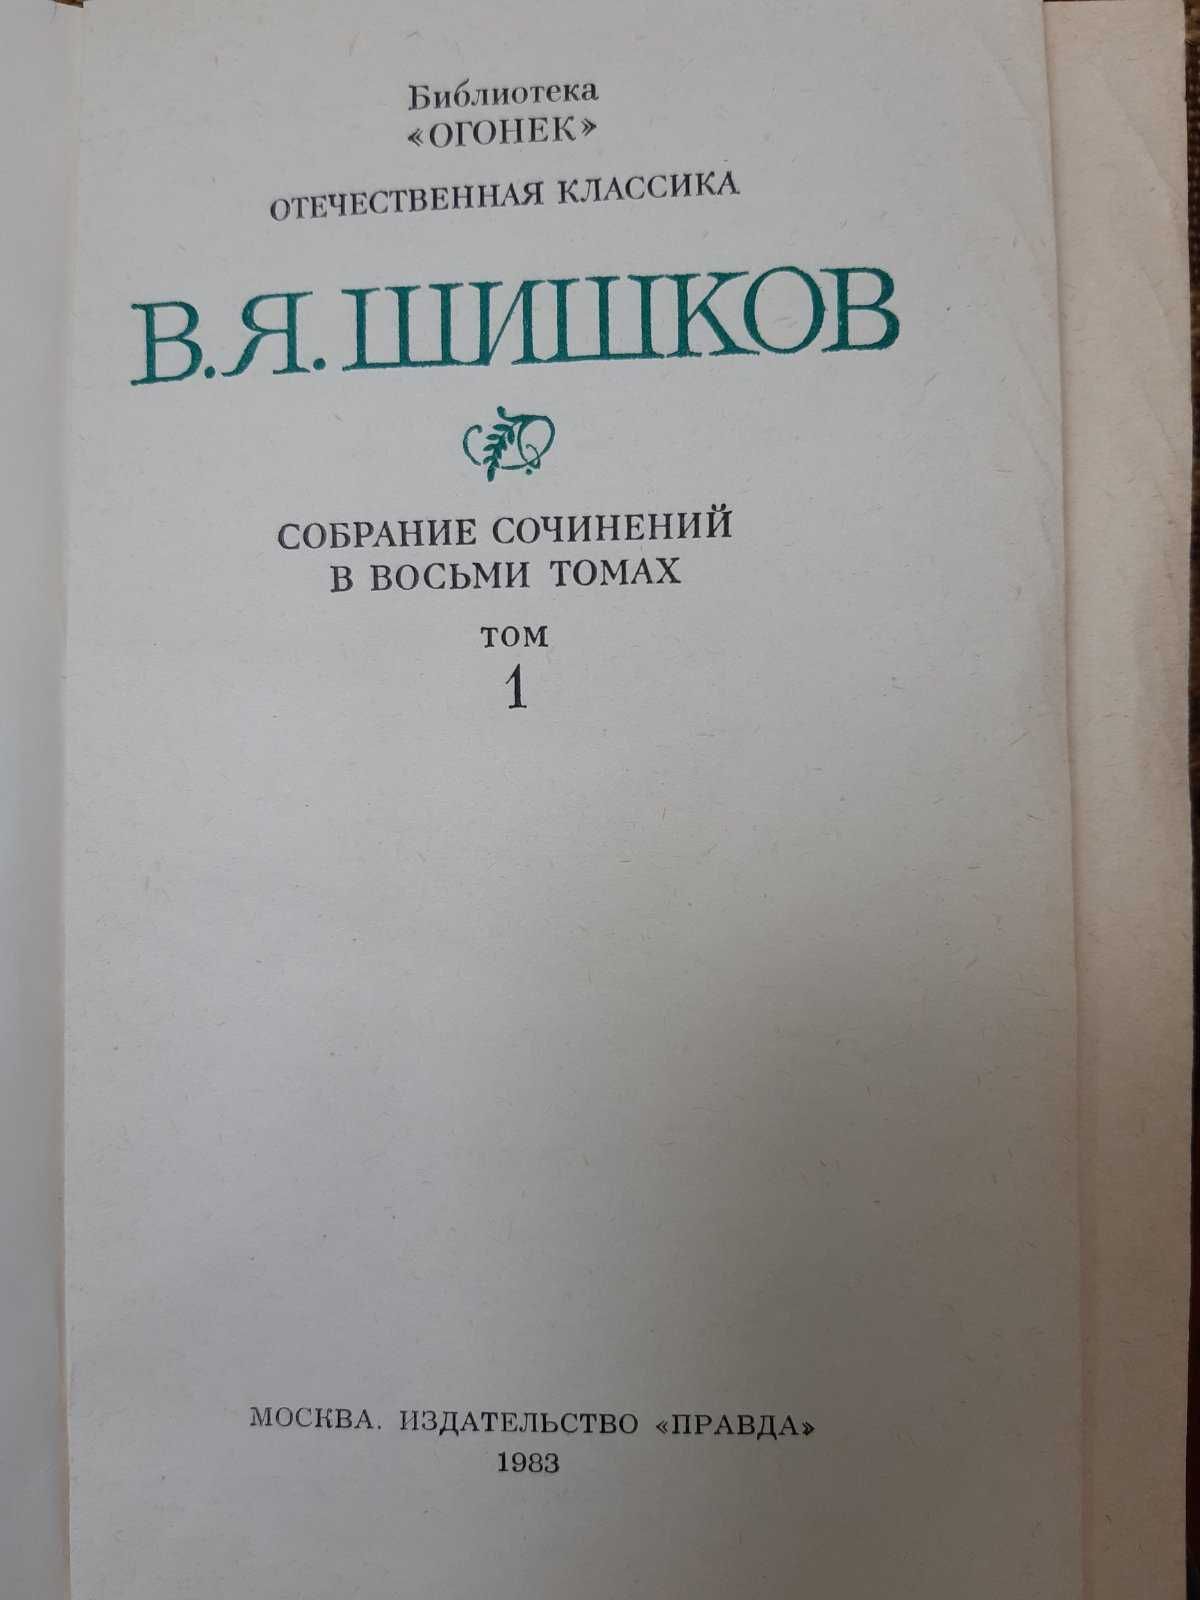 Шишков В.Я. Собрание сочинений в 8 томах